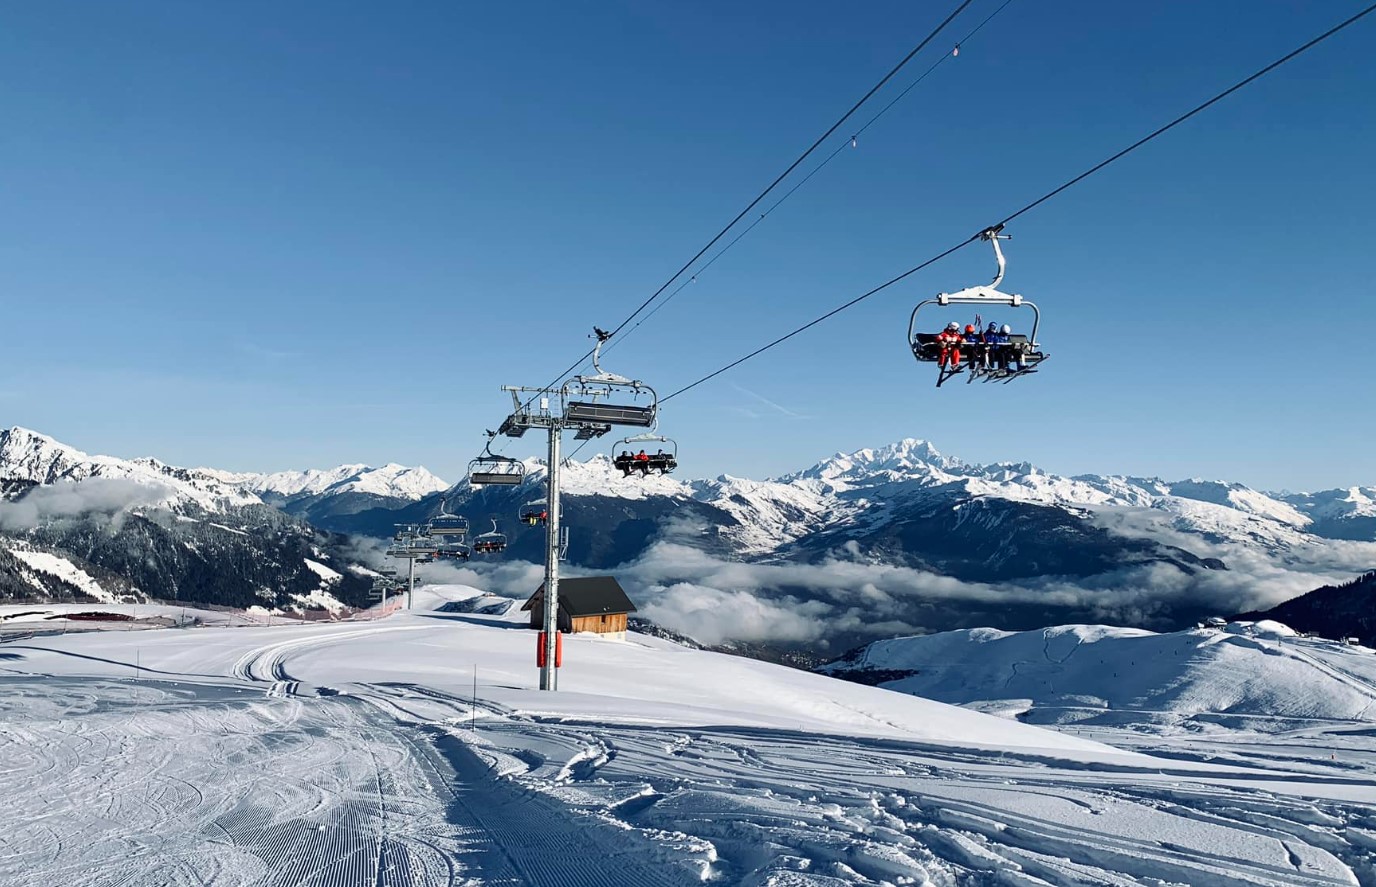 Valmorel Ski Resort in France